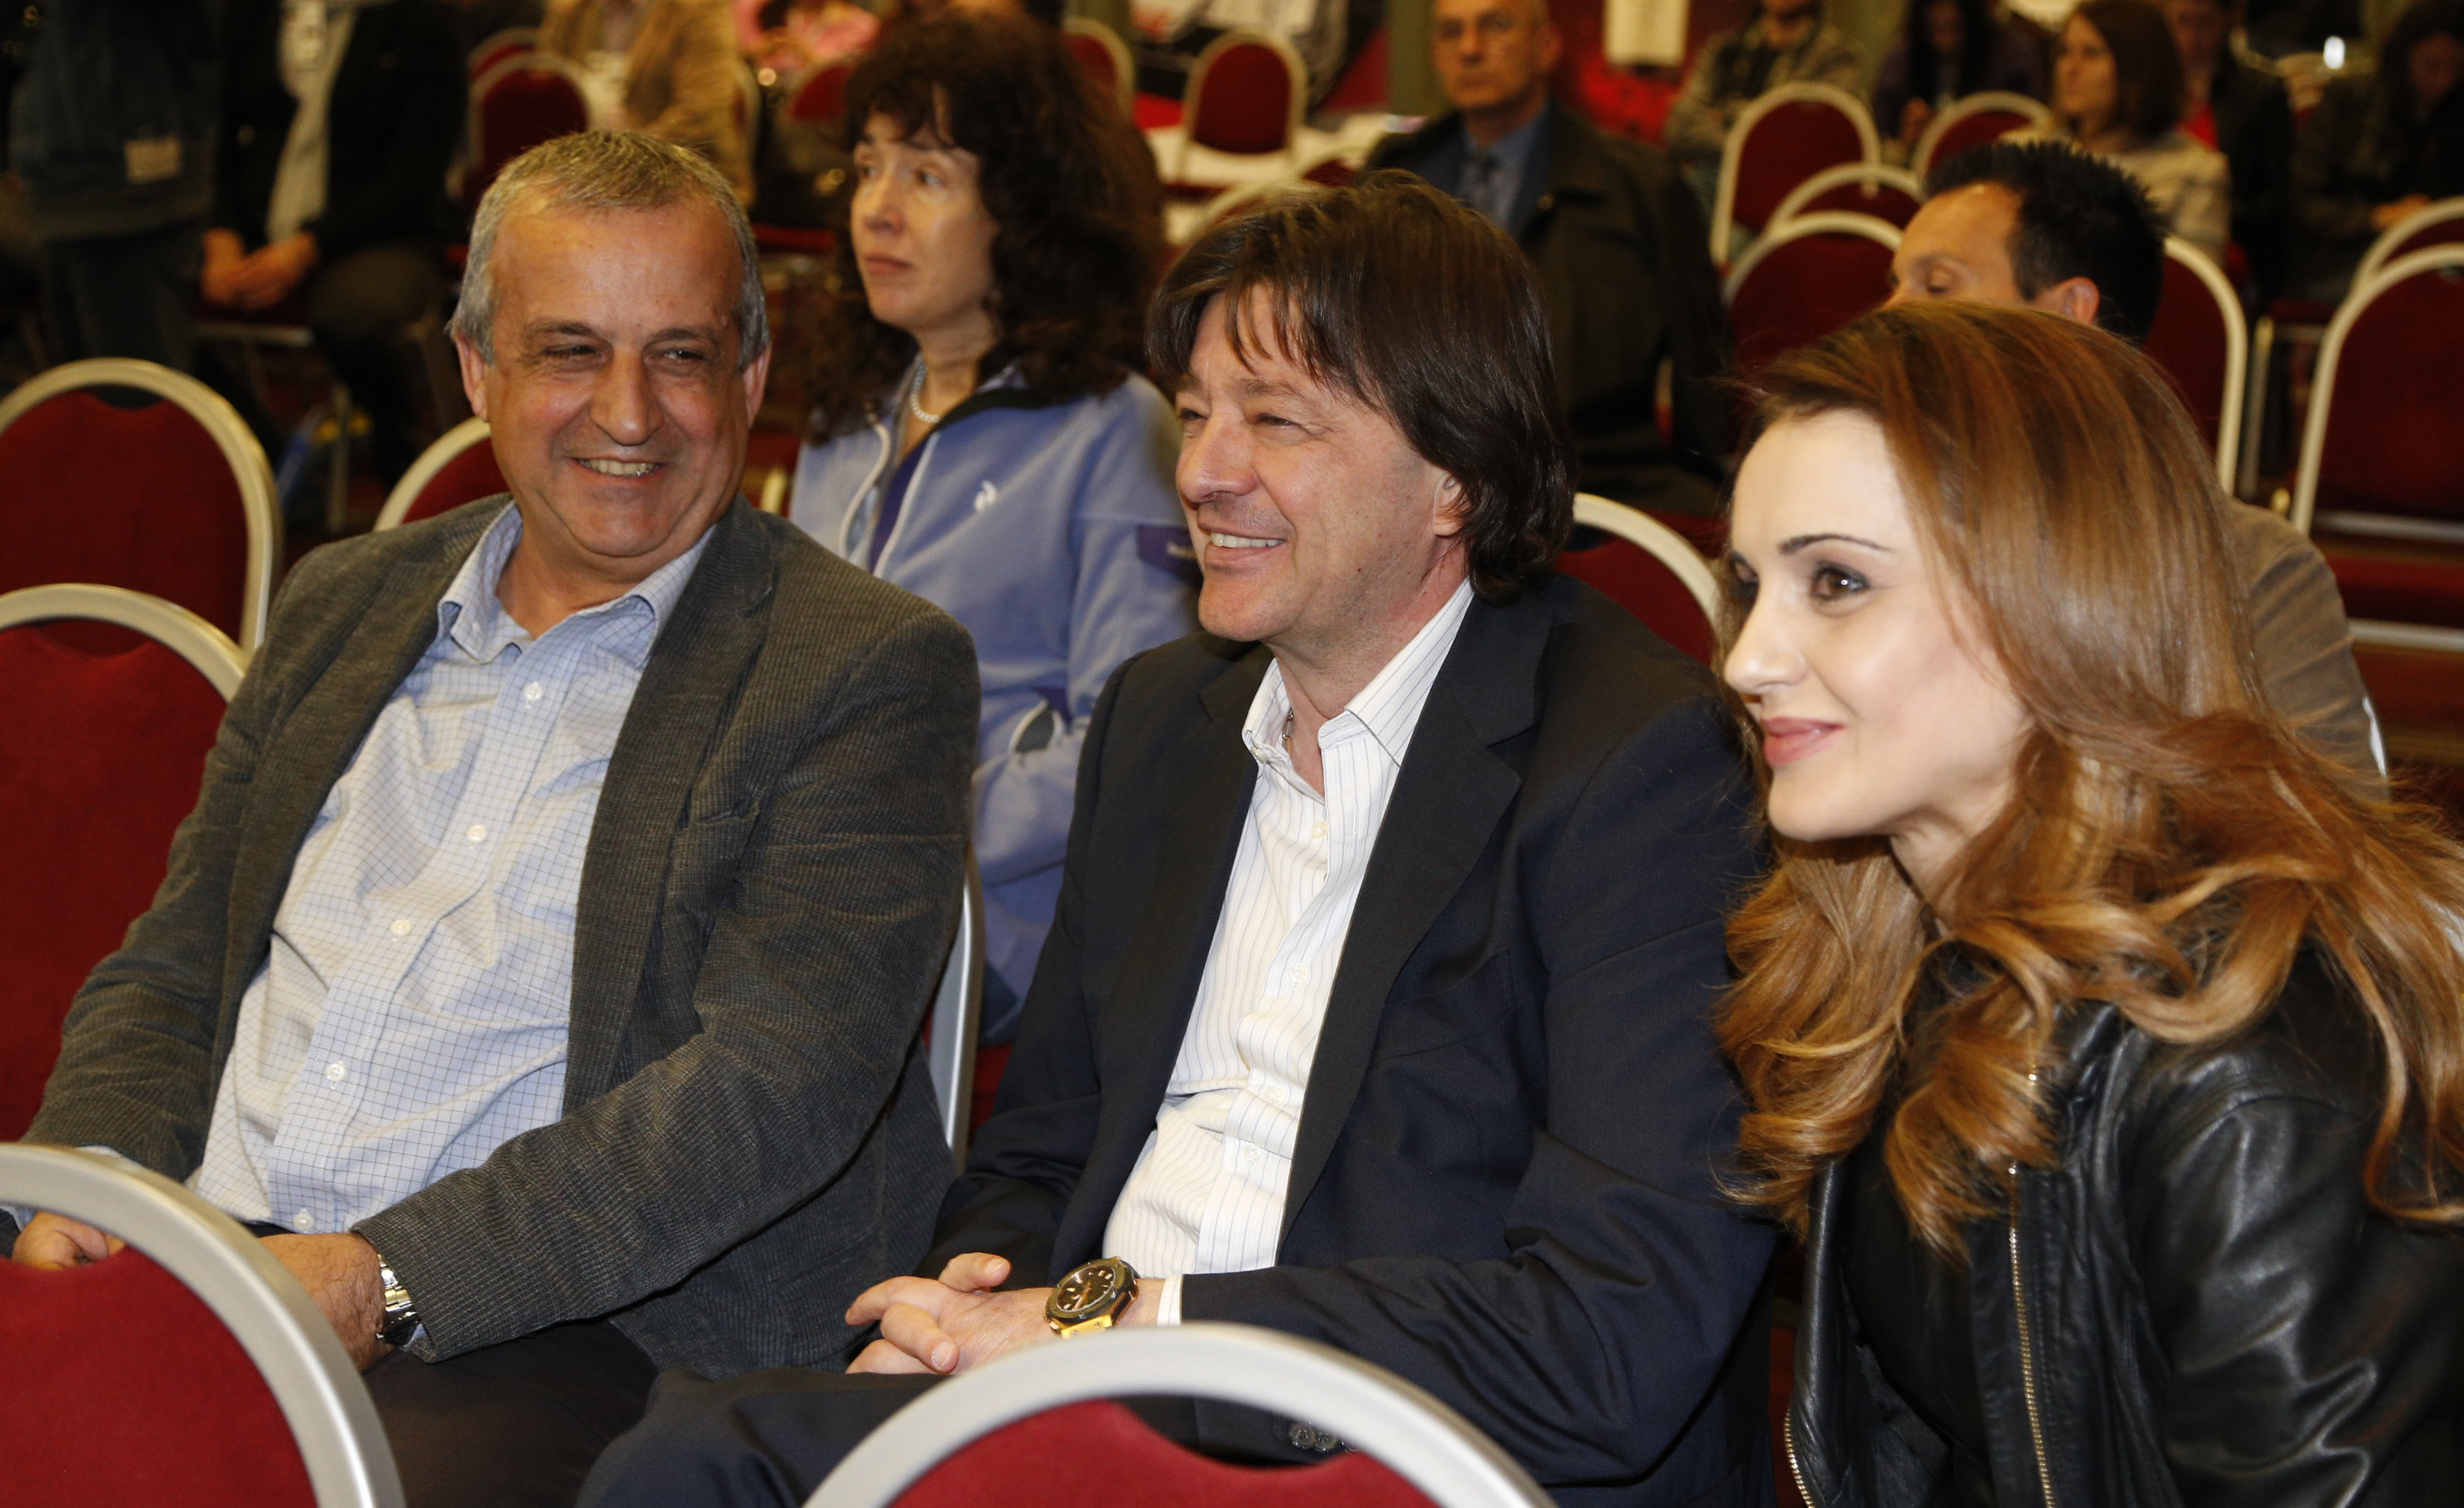 Гроздева, Йовчев и Любо Ганев бяха участници в конференция по въпросите на маркетинга чрез спорта